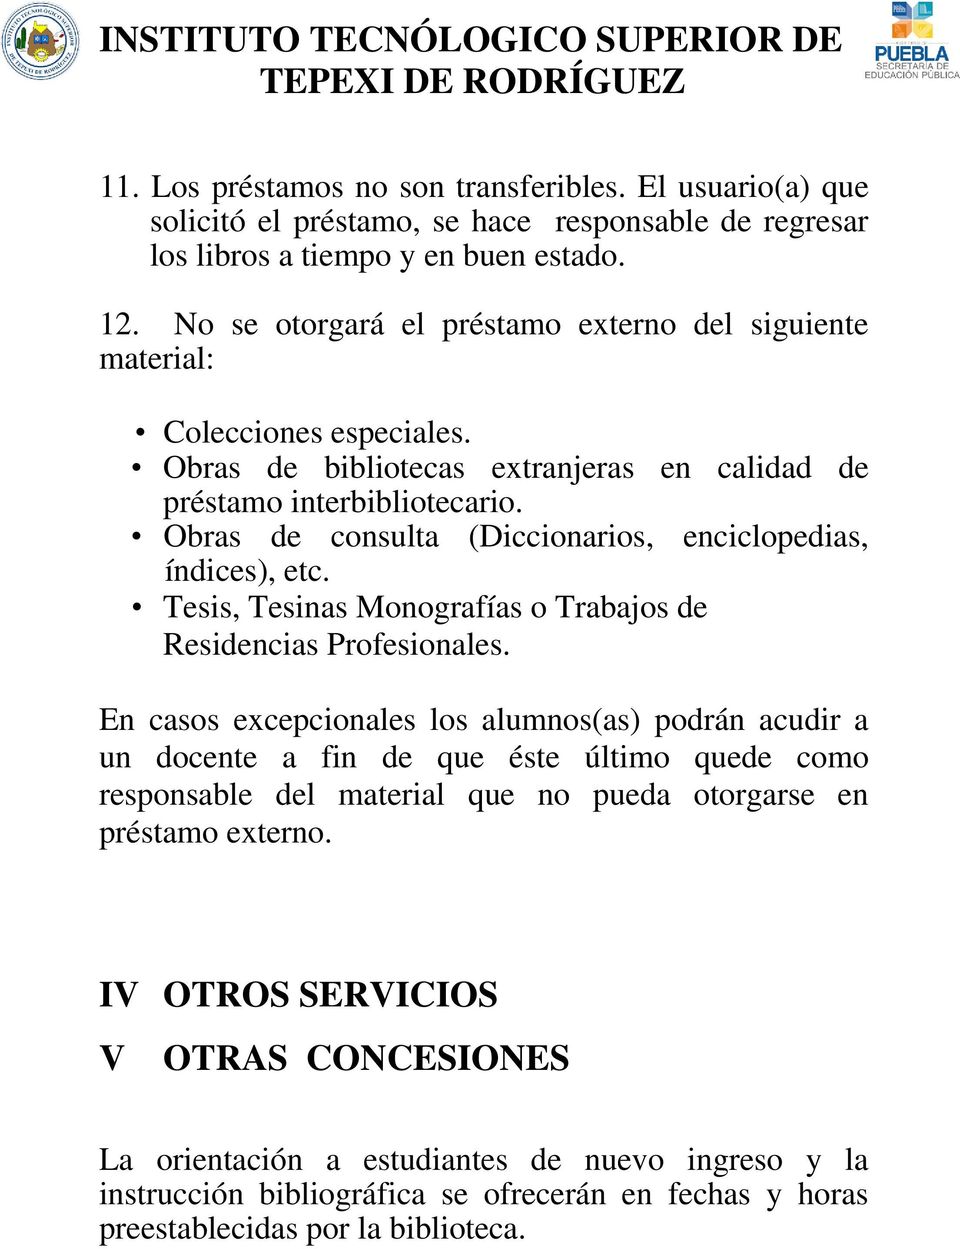 Obras de consulta (Diccionarios, enciclopedias, índices), etc. Tesis, Tesinas Monografías o Trabajos de Residencias Profesionales.